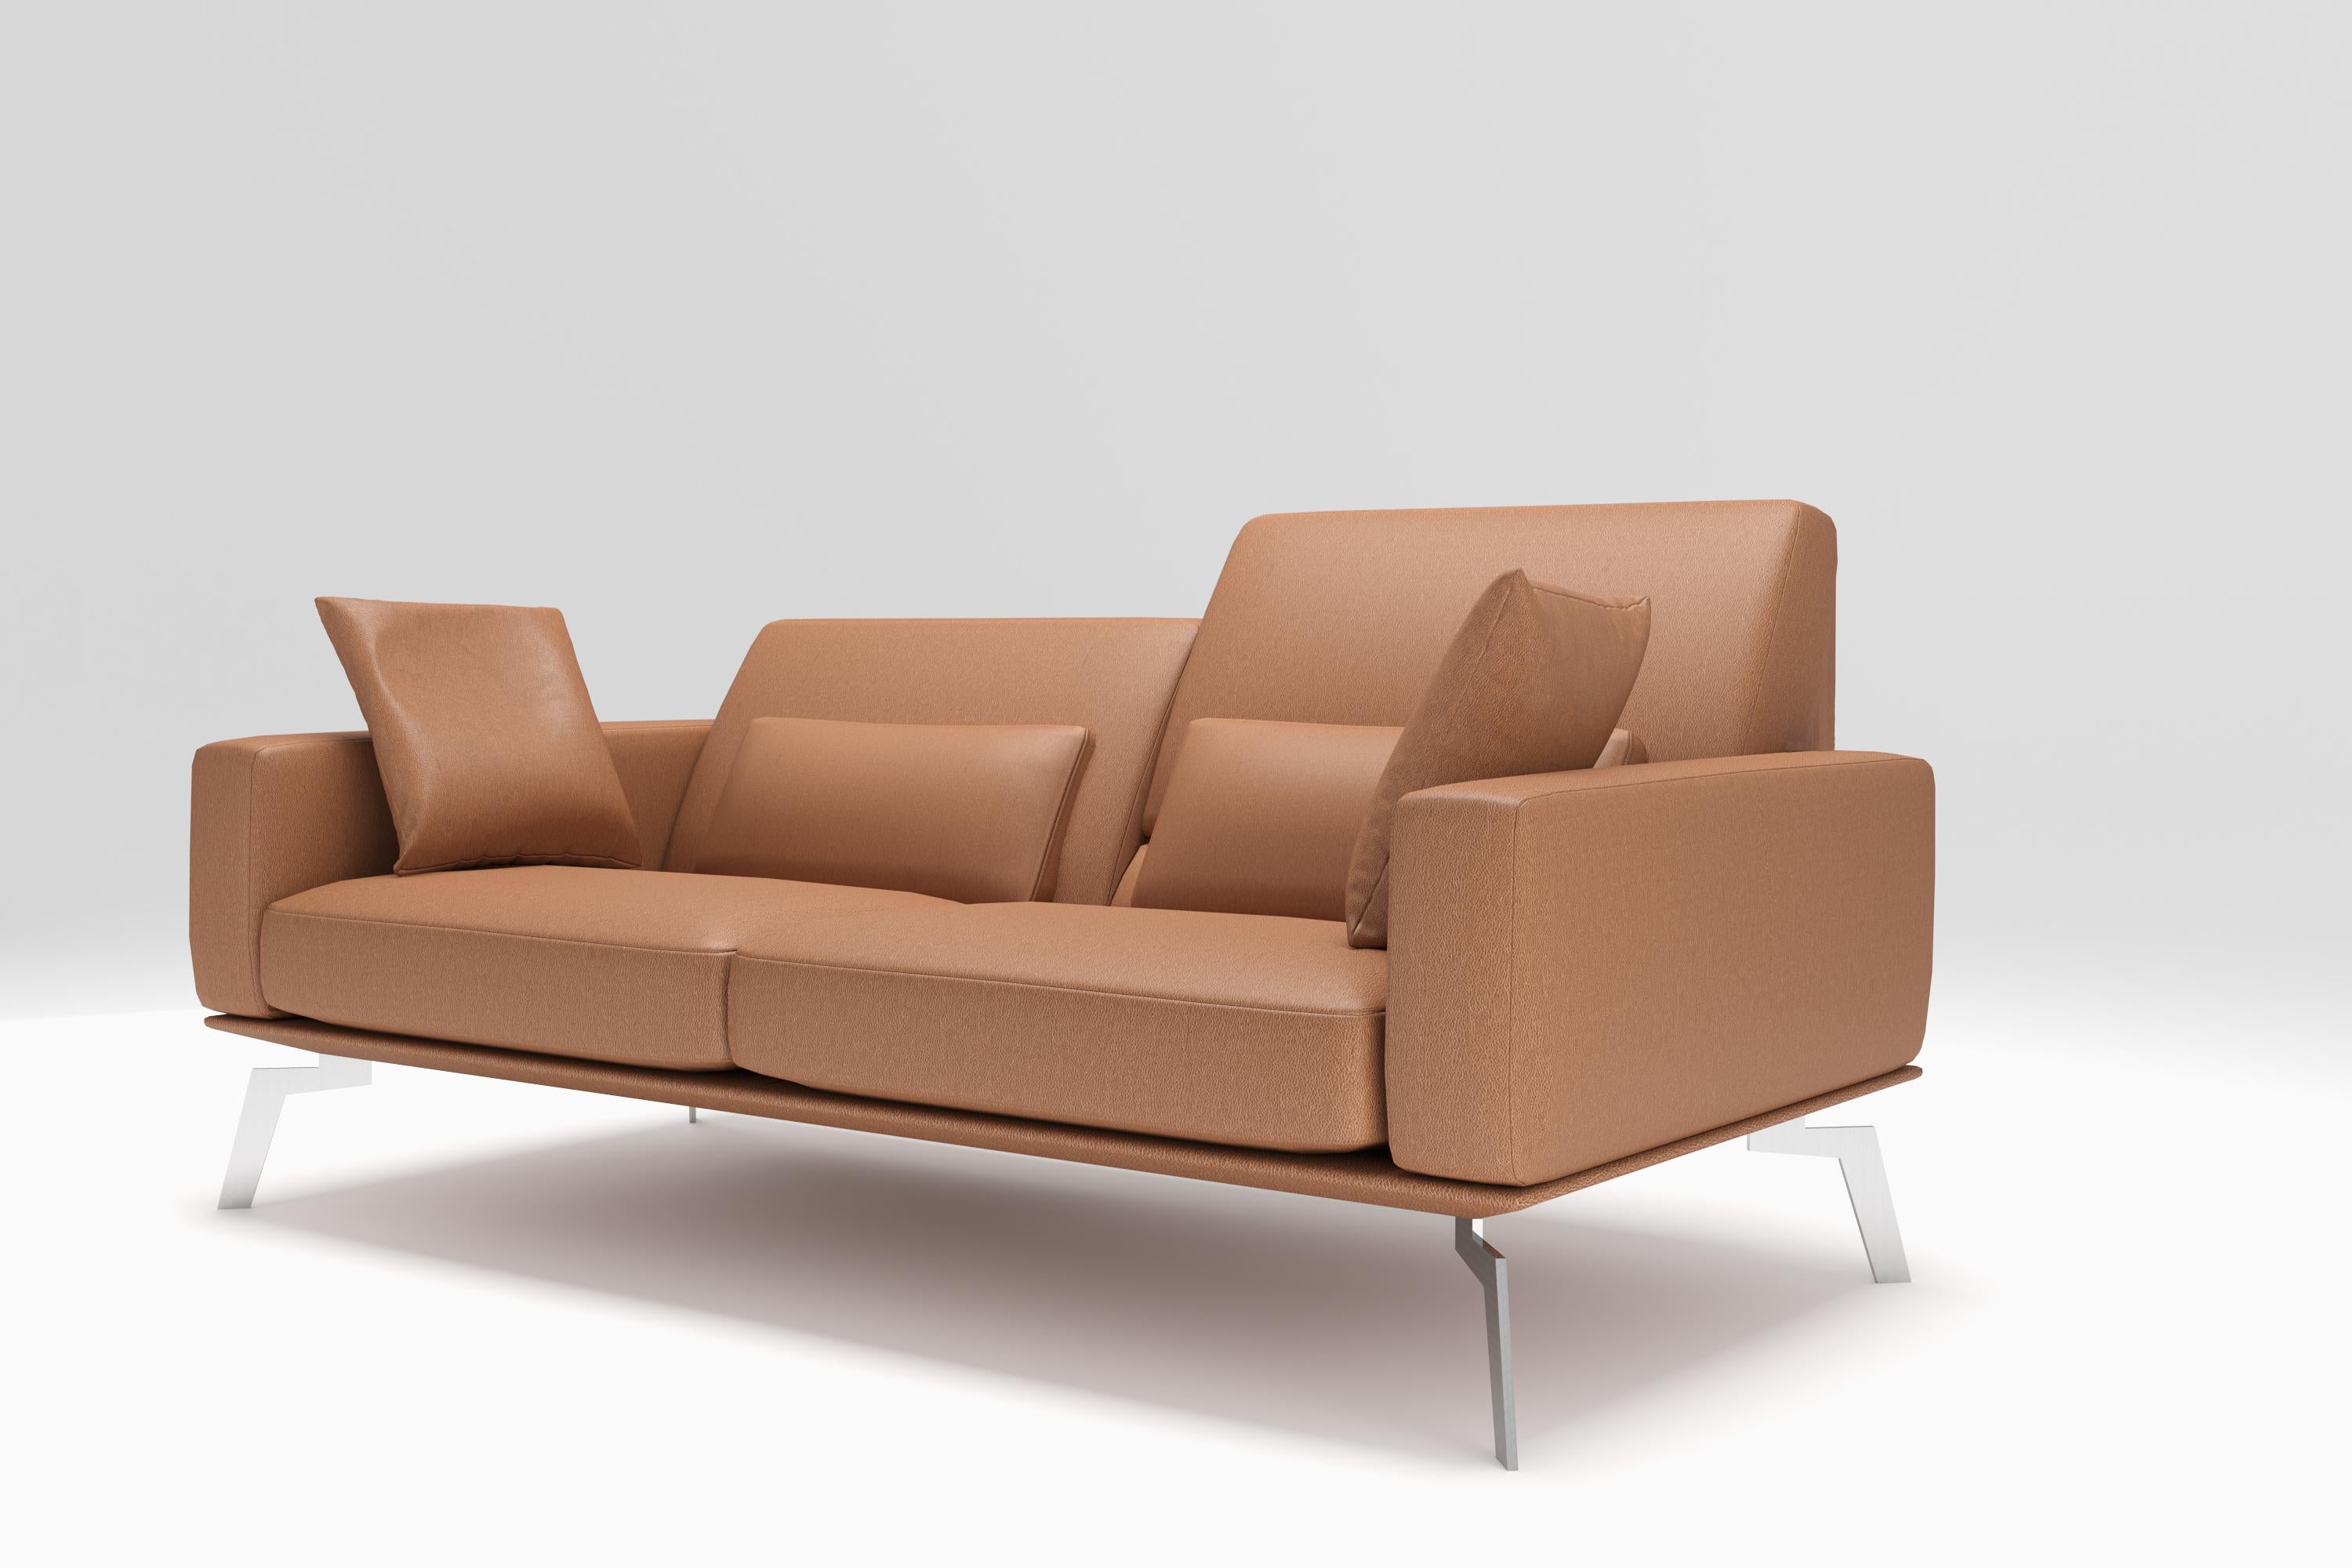 Das elegante Sofamodell DS-87 scheint mit seiner schlanken Form wie eine Insel der Ruhe im Raum zu schweben, wo es sich nahtlos in jede moderne Umgebung einfügt. Ein Polstermöbel, das mit sich selbst im Reinen ist, für den urbanen Zeitgenossen mit